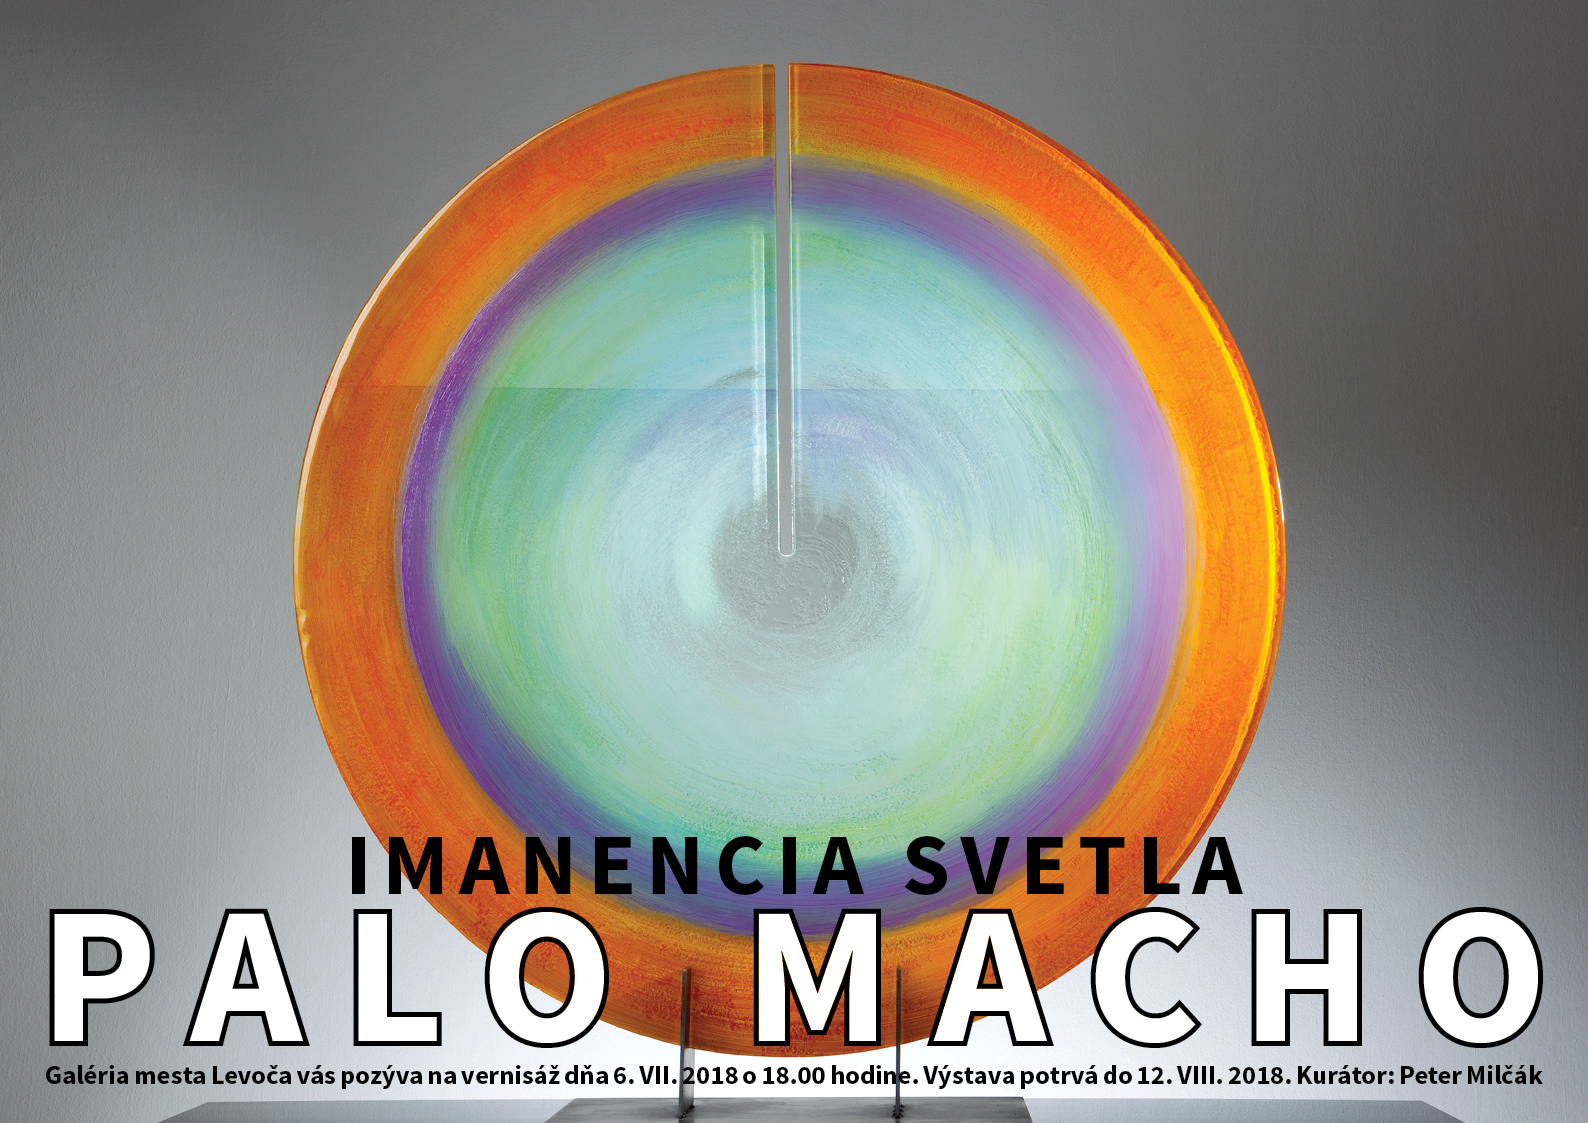 Palo Macho - Imanencia svetla